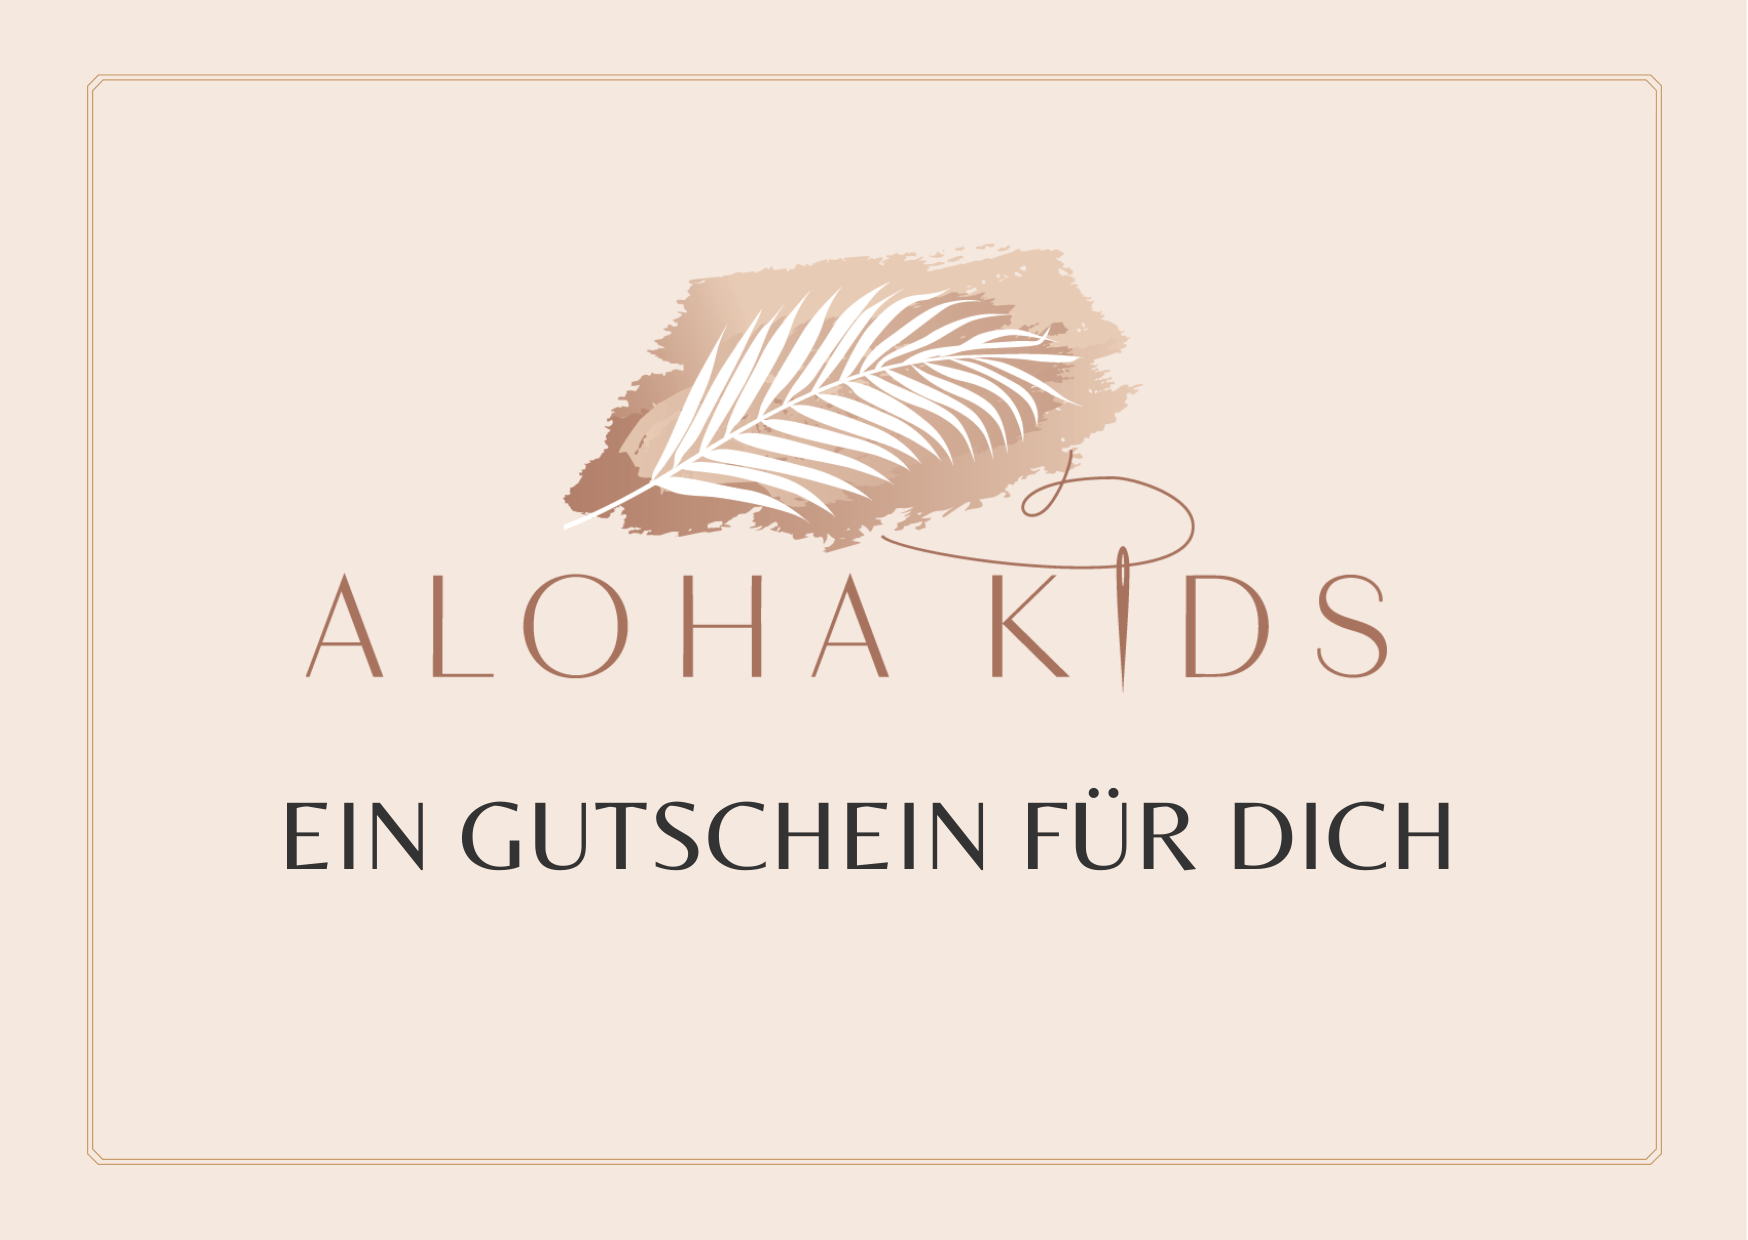 Alohakids Gutschein Online - Geschenkgutschein